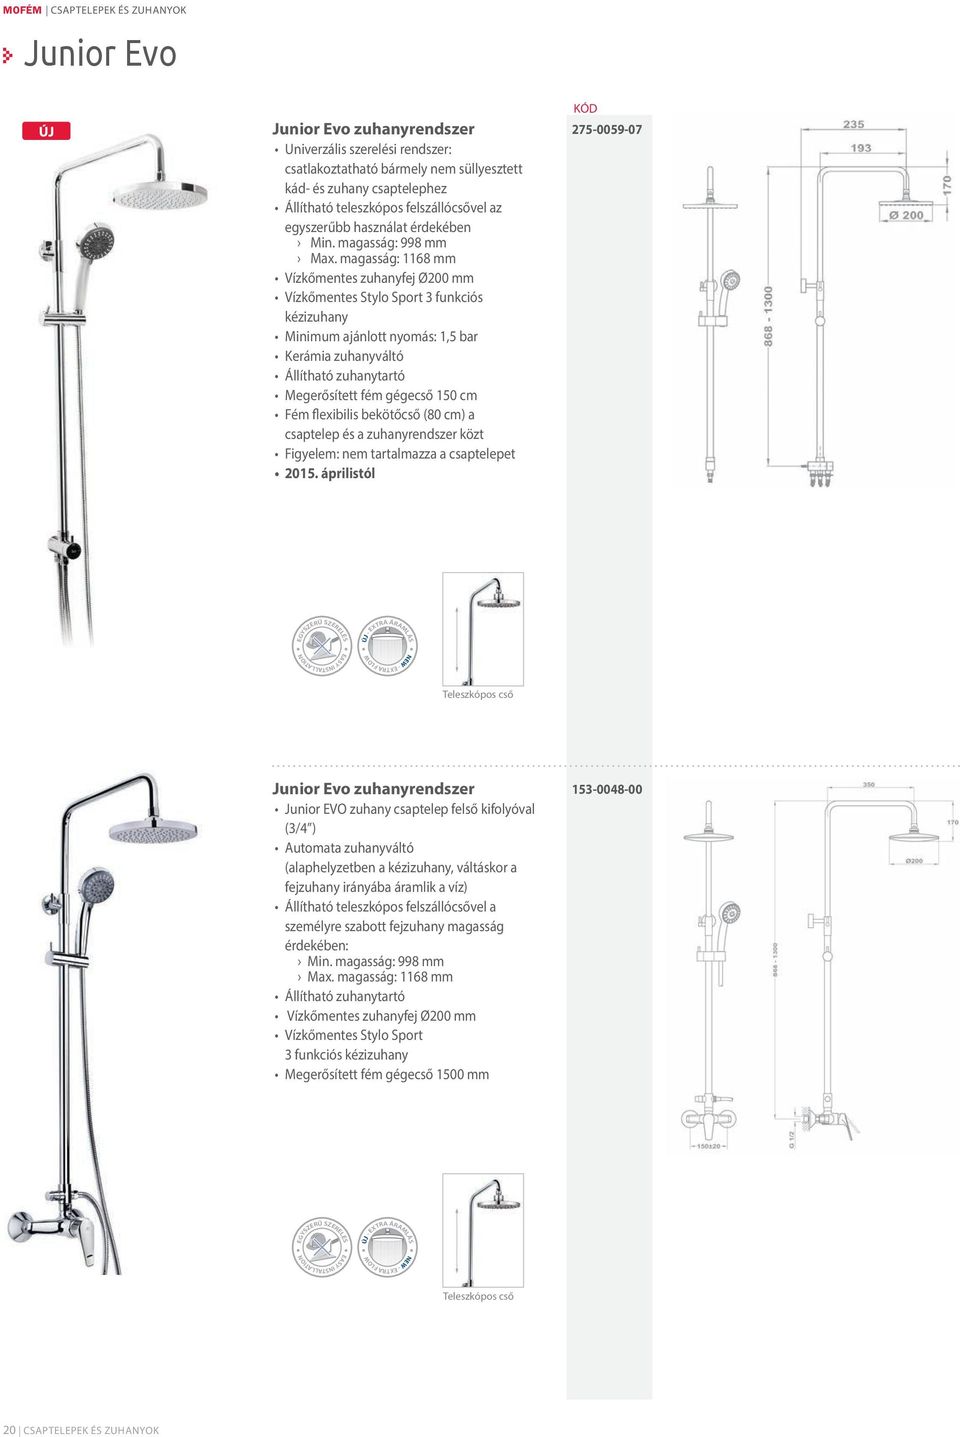 magasság: 1168 mm Vízkőmentes zuhanyfej Ø200 mm Vízkőmentes Stylo Sport 3 funkciós kézizuhany Minimum ajánlott nyomás: 1,5 bar Kerámia zuhanyváltó Állítható zuhanytartó Megerősített fém gégecső 150